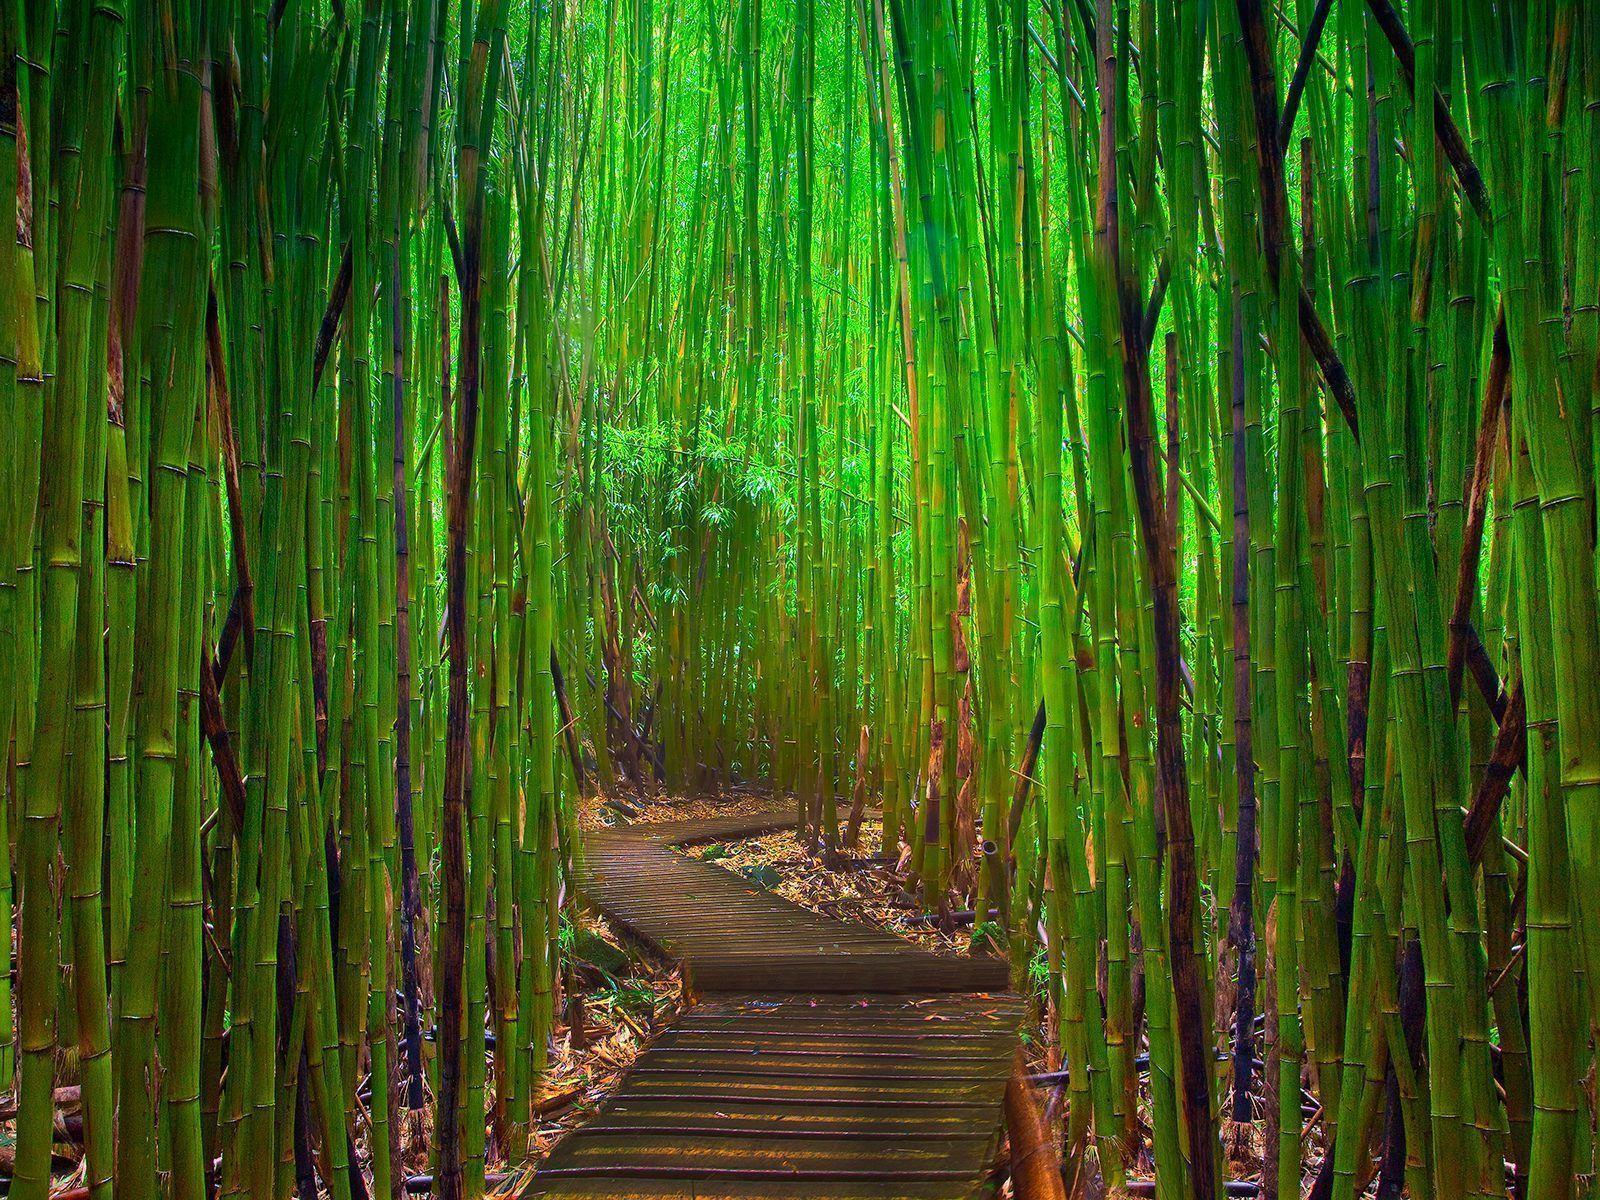 Bamboo iPad Wallpaper. ForestHDWallpaper